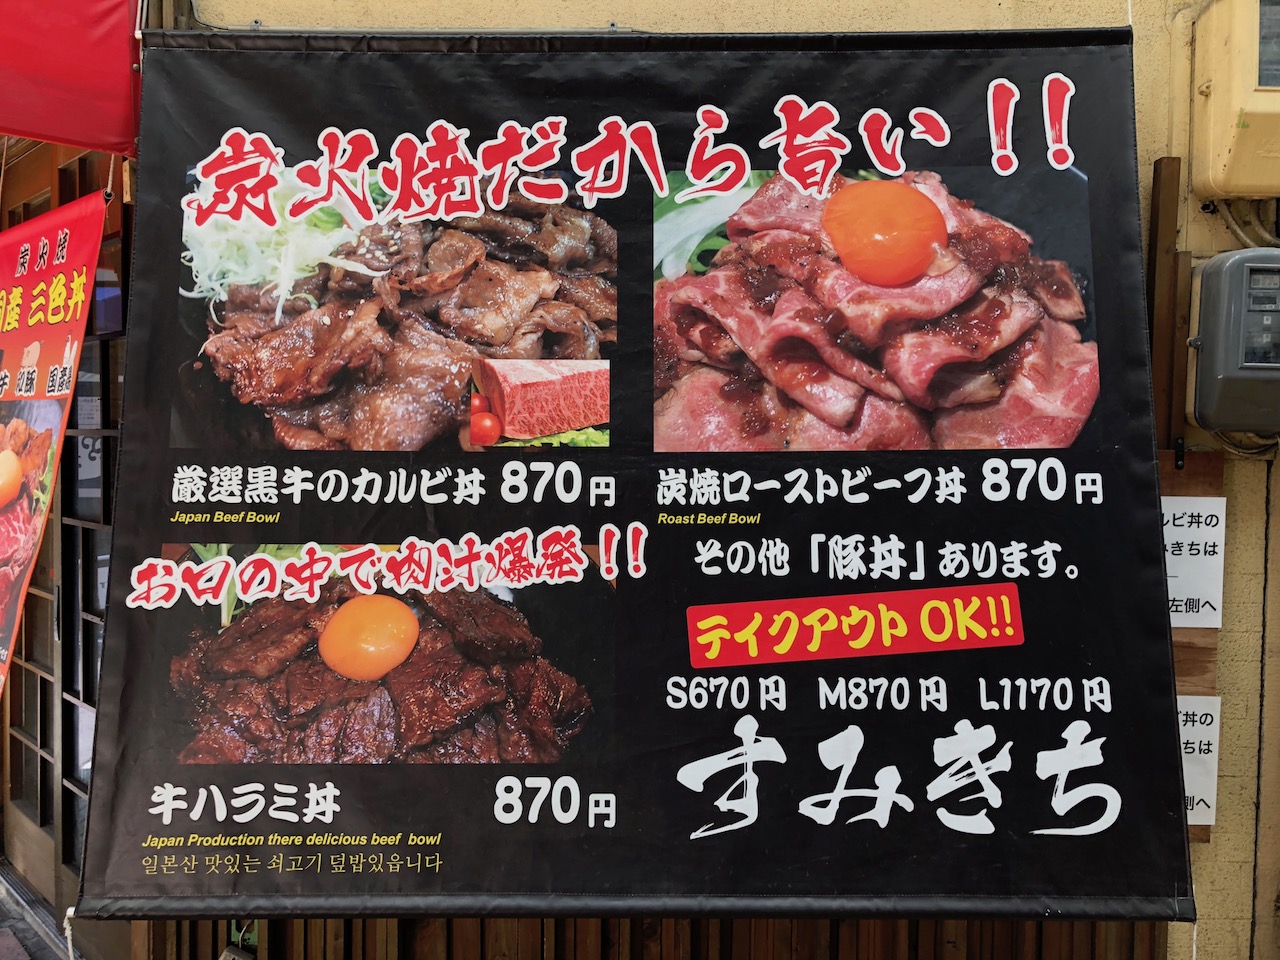 早速のリピート...姫路駅前の焼肉屋さん「すみきち」で今度はランチにカルビ丼食べてみたら・・・